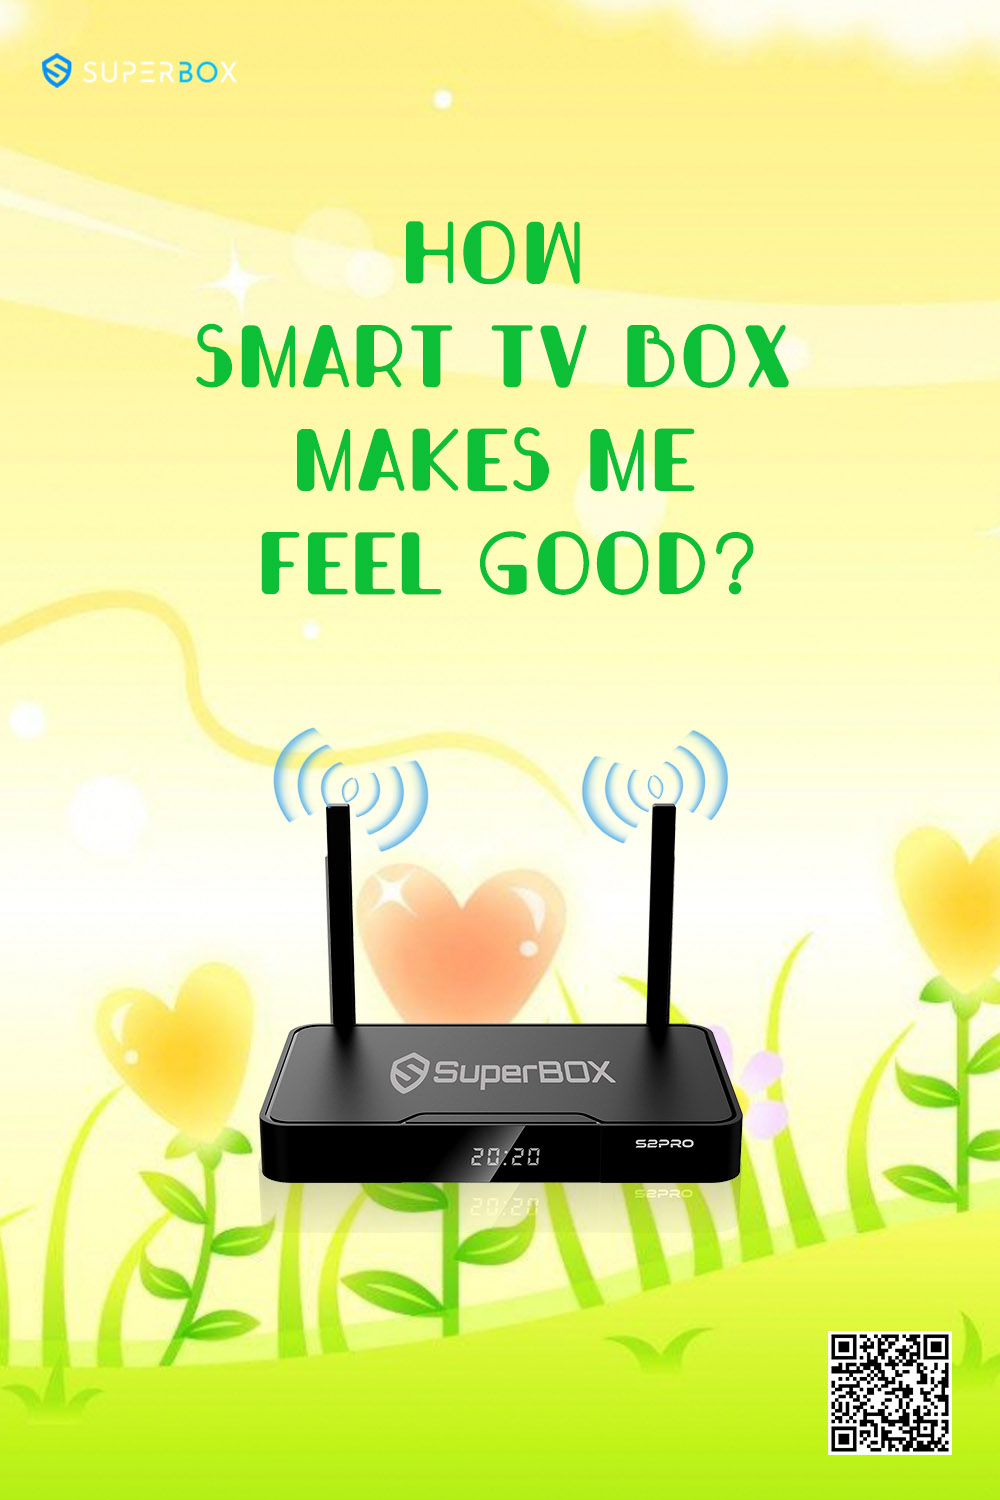 In che modo Smart TV Box mi fa sentire bene?